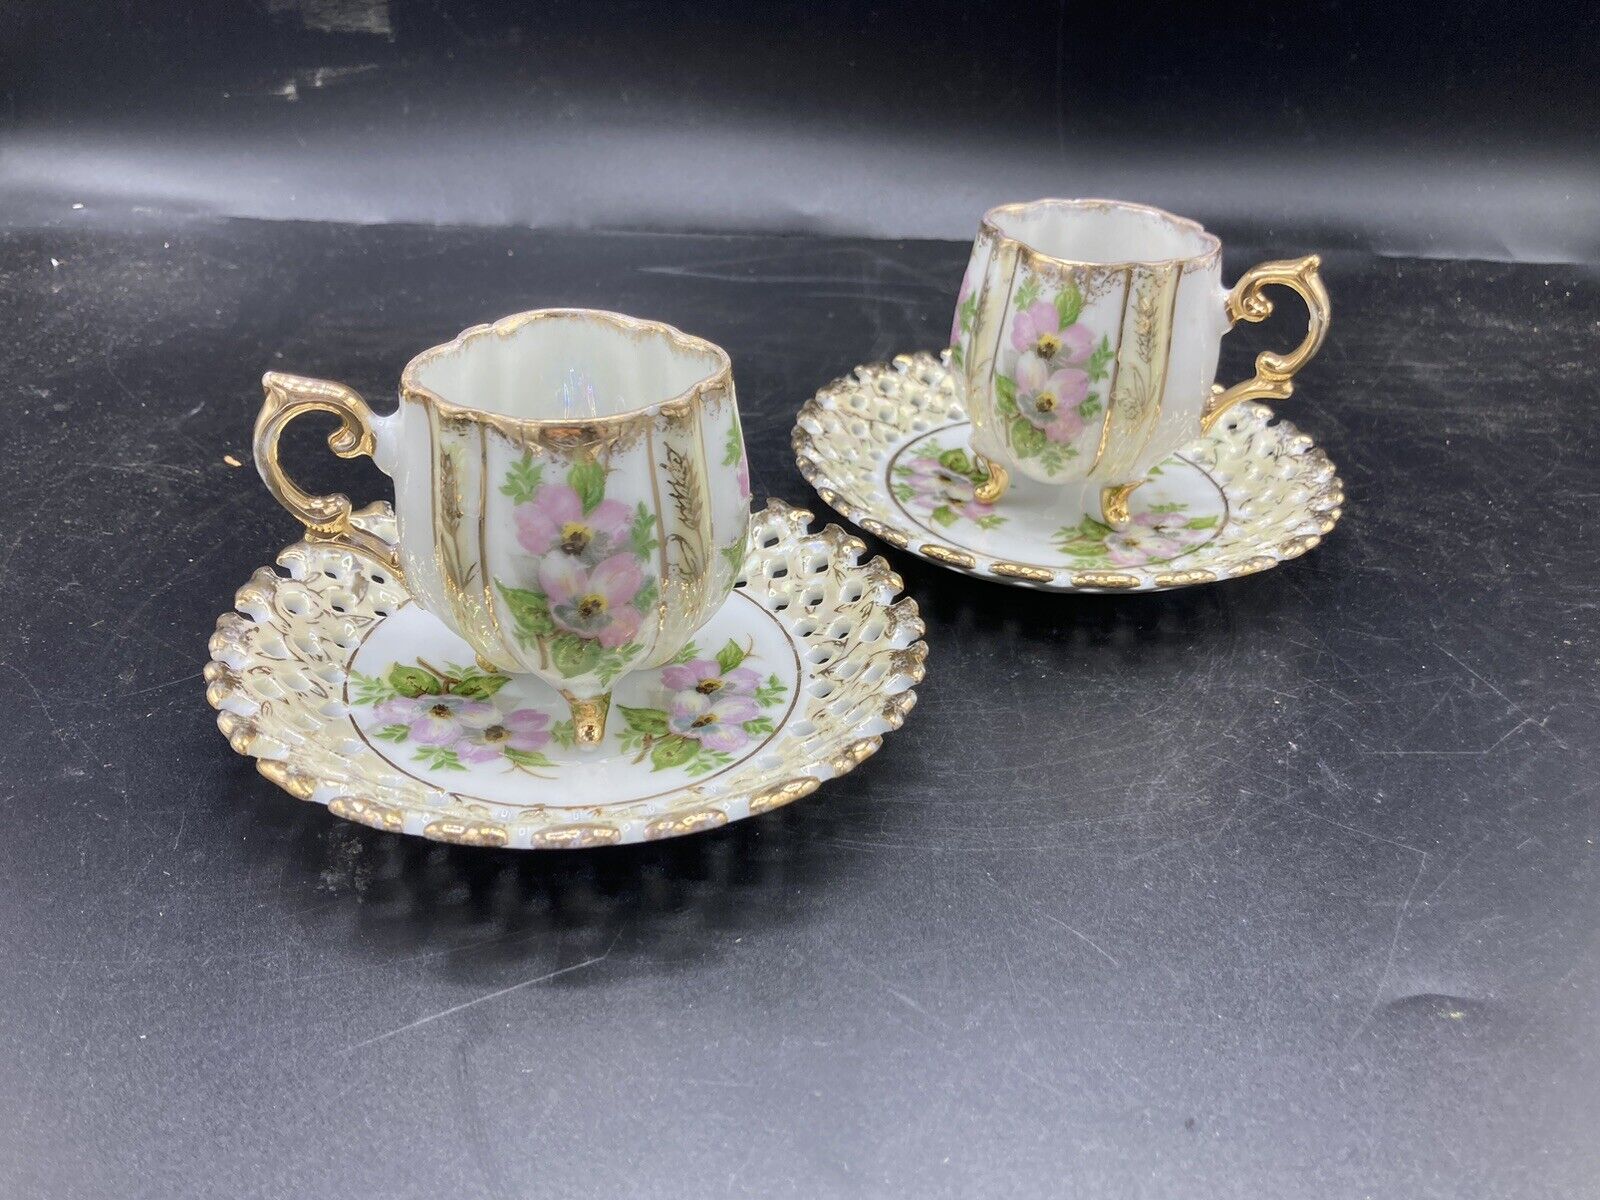 2 Vintage Or Antique demitasse, Footed Tea Cups & Saucers, Floral Design